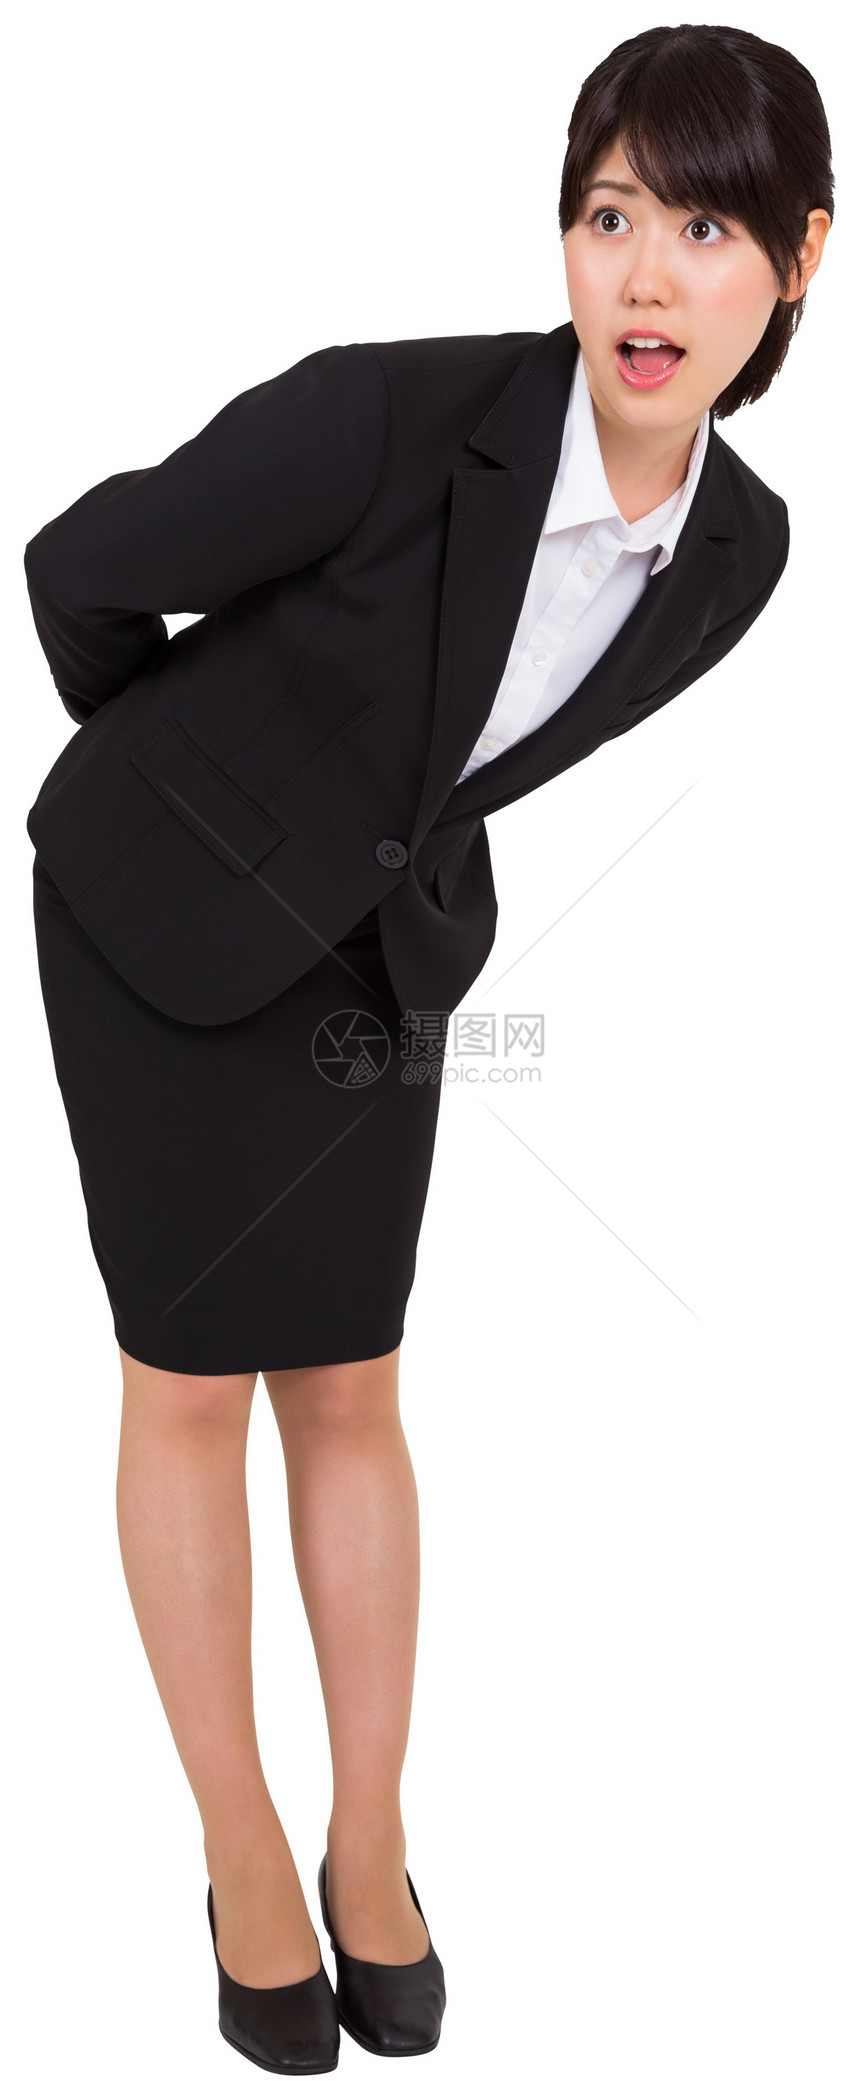 令人惊讶的女商务人士弯腰女性公司女士职业商业惊奇震惊商务人士图片